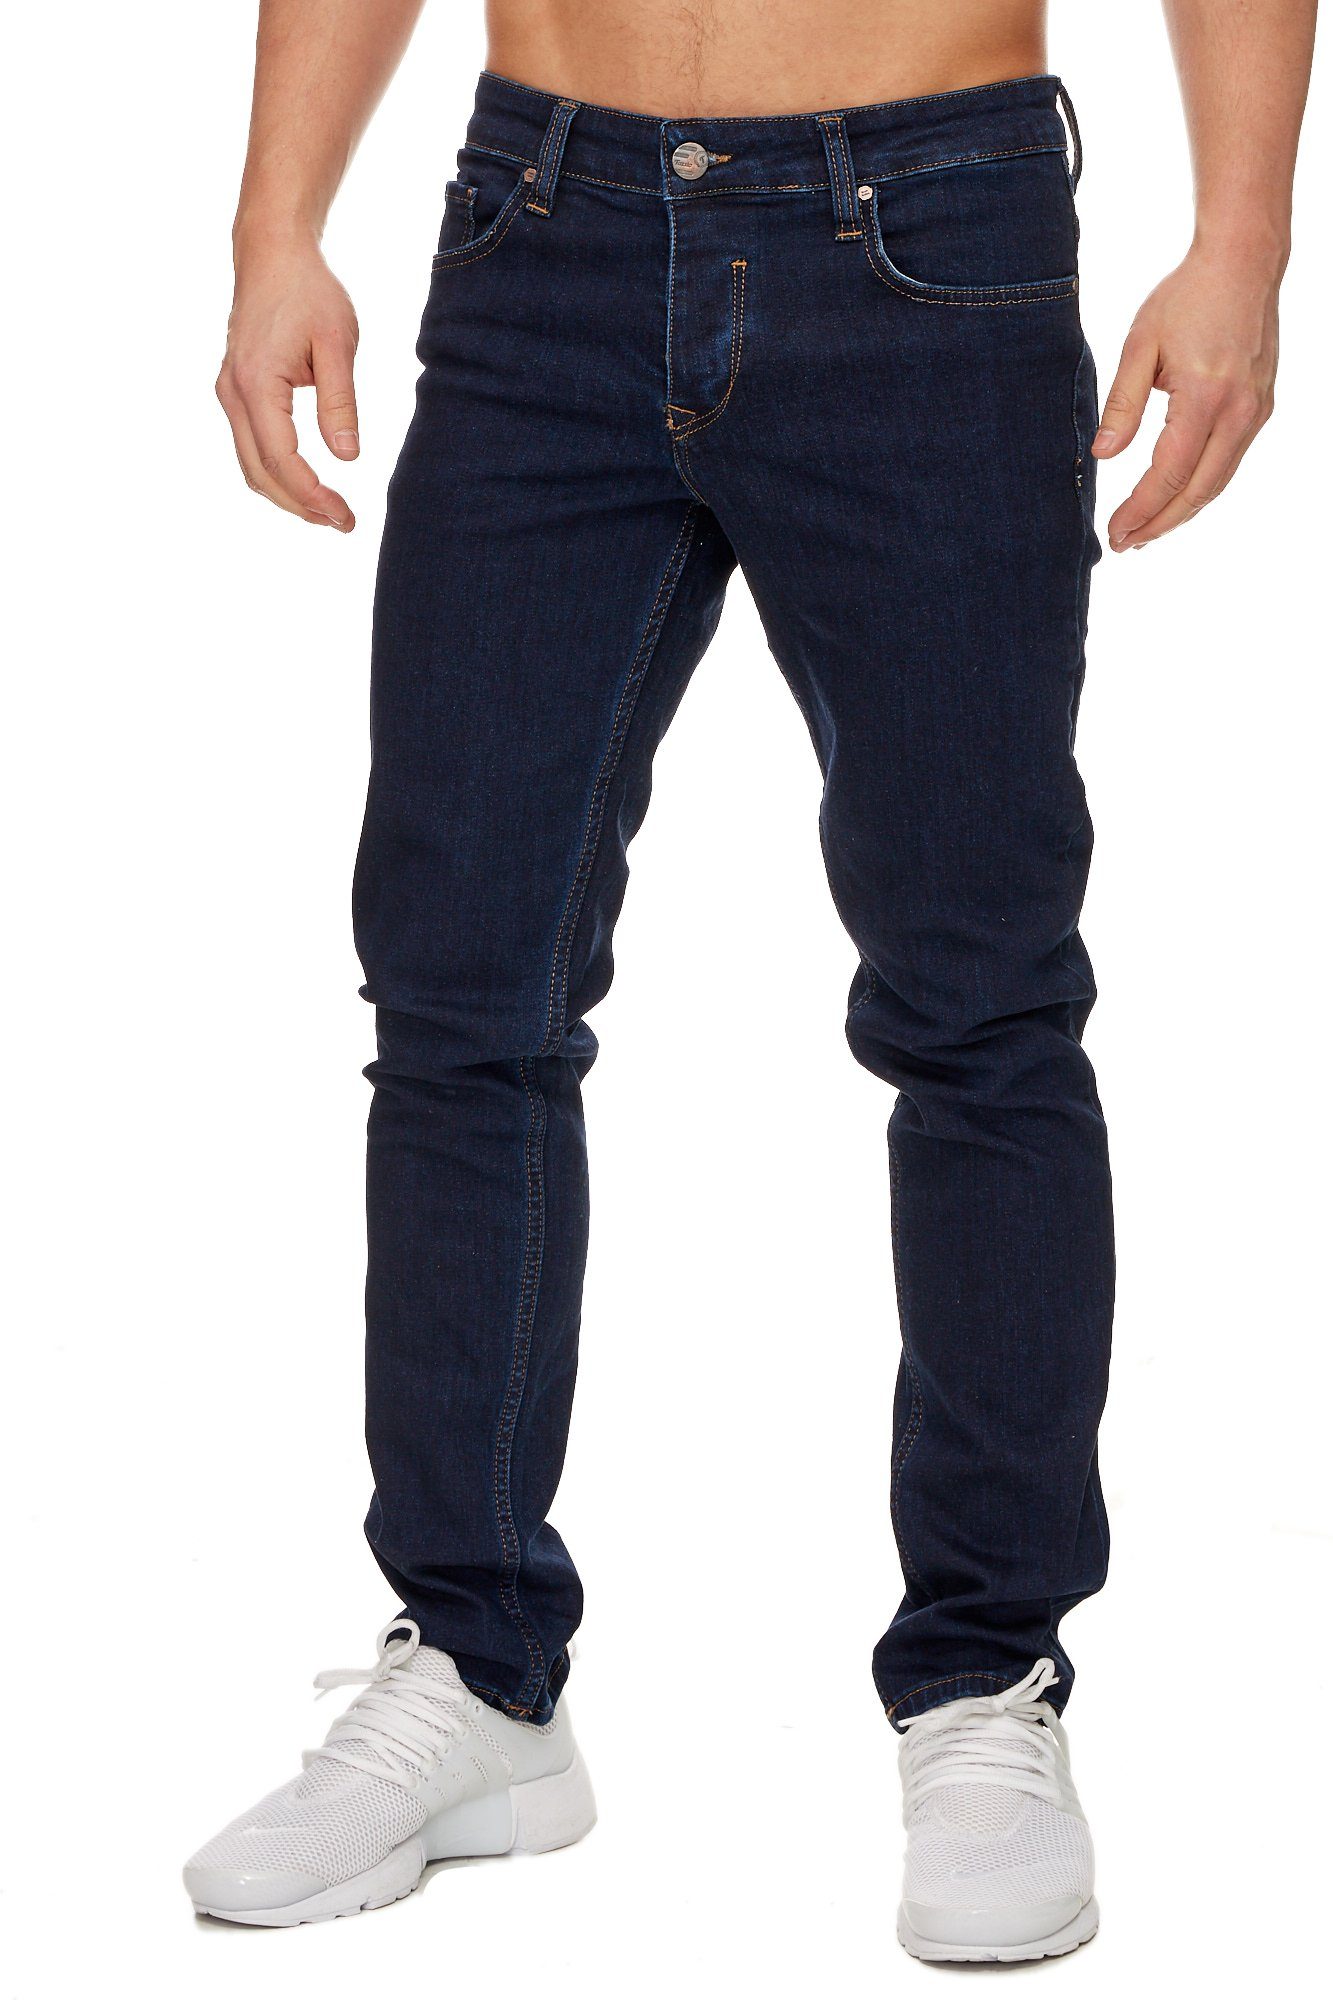 Herren Stretch Jeans online kaufen | OTTO